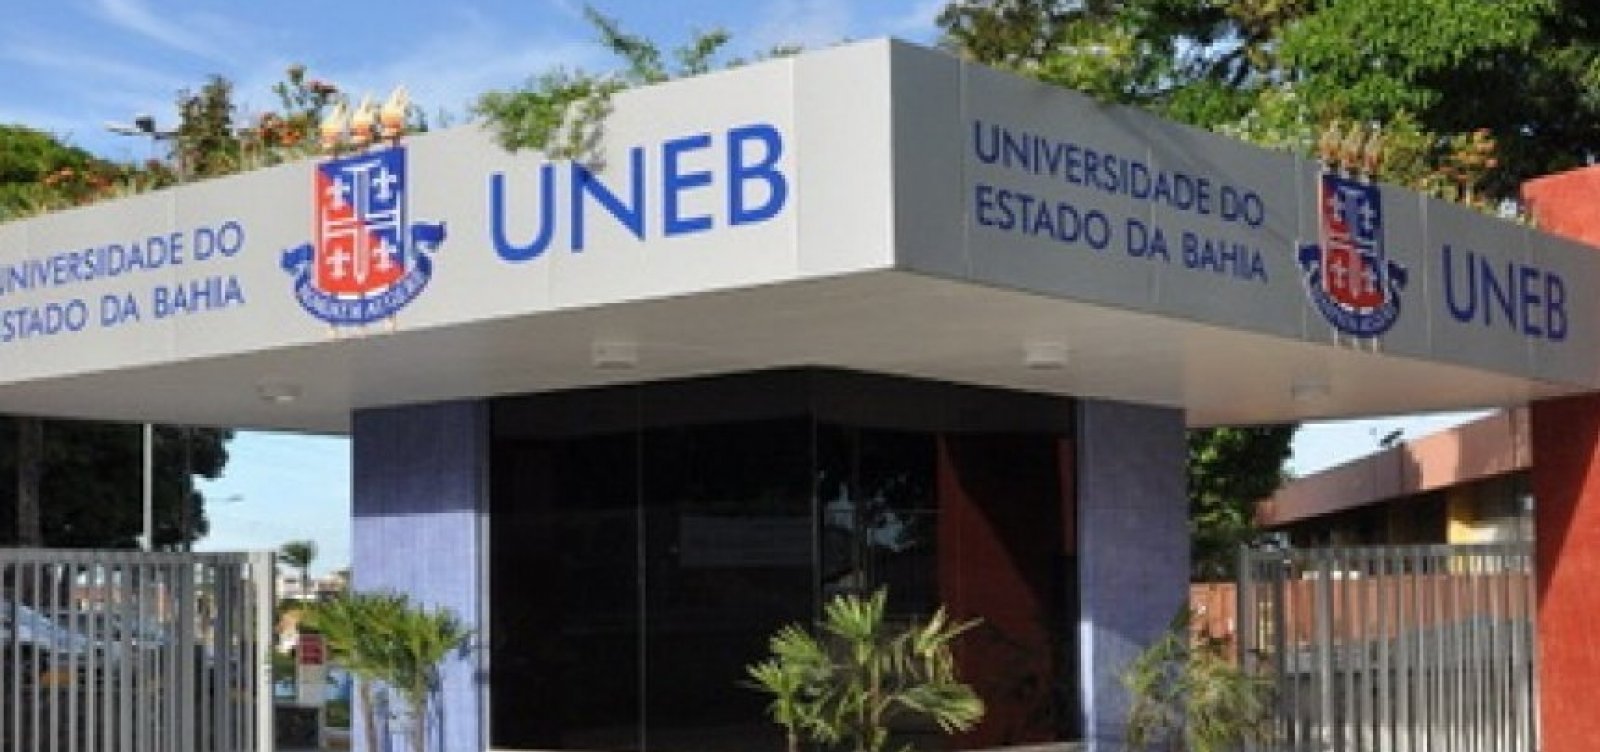 Universidades estaduais da Bahia realizam paralisação na próxima terça-feira por reajuste salarial 